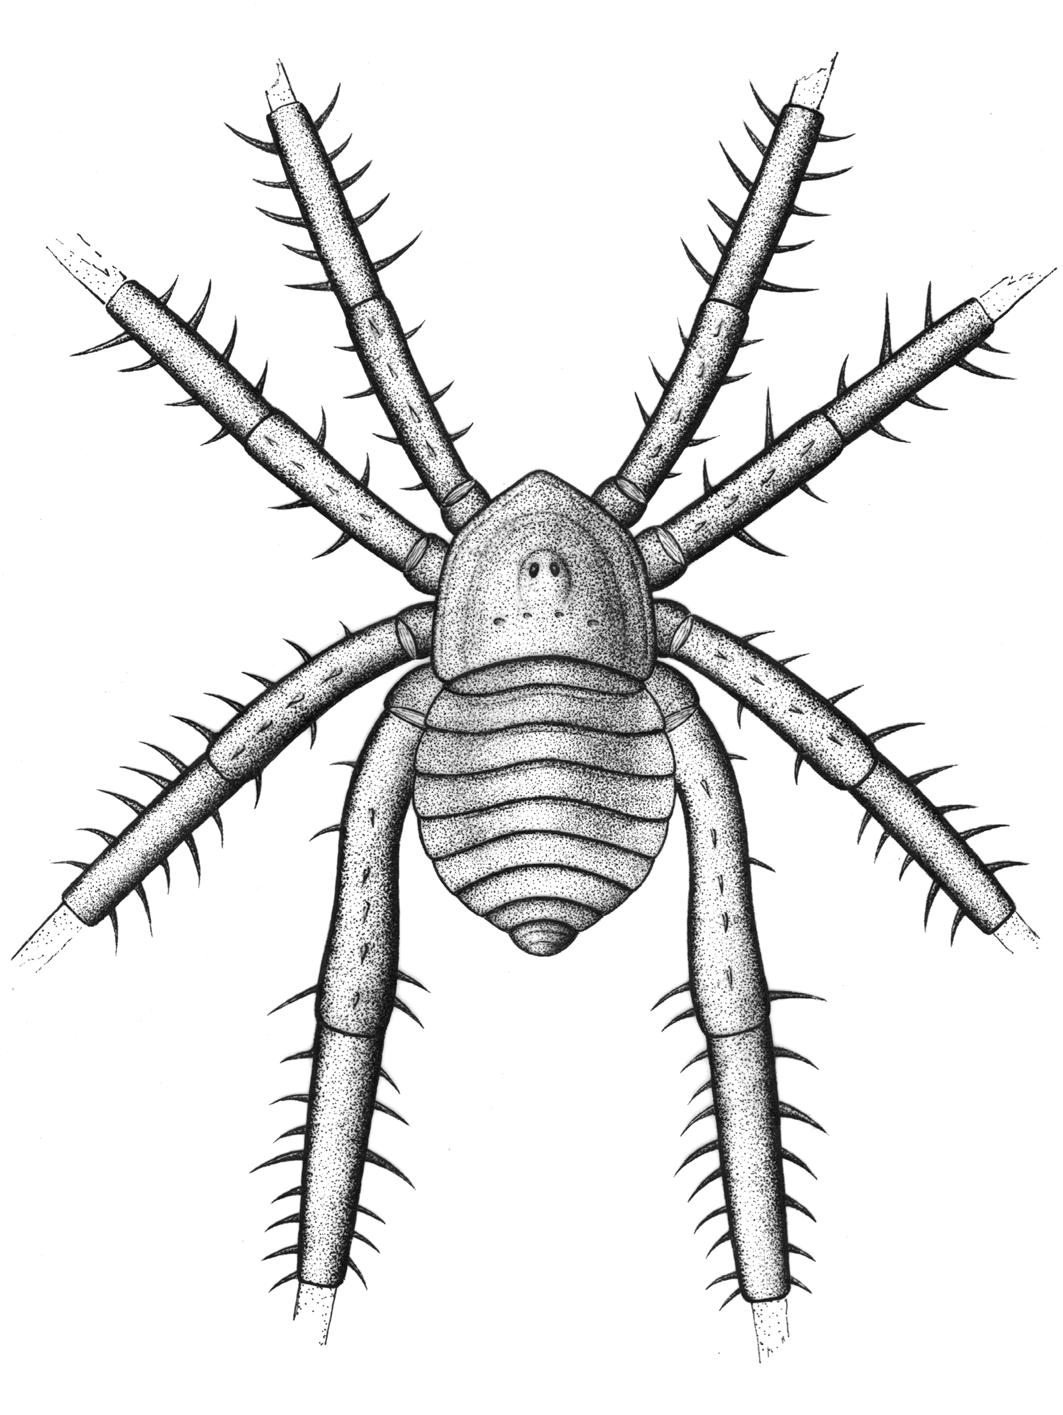 Fóssil mostrou que espécie tinha pernas fortes e pontiagudas. (Fonte: Selden & Dunlop/ Divulgação) 